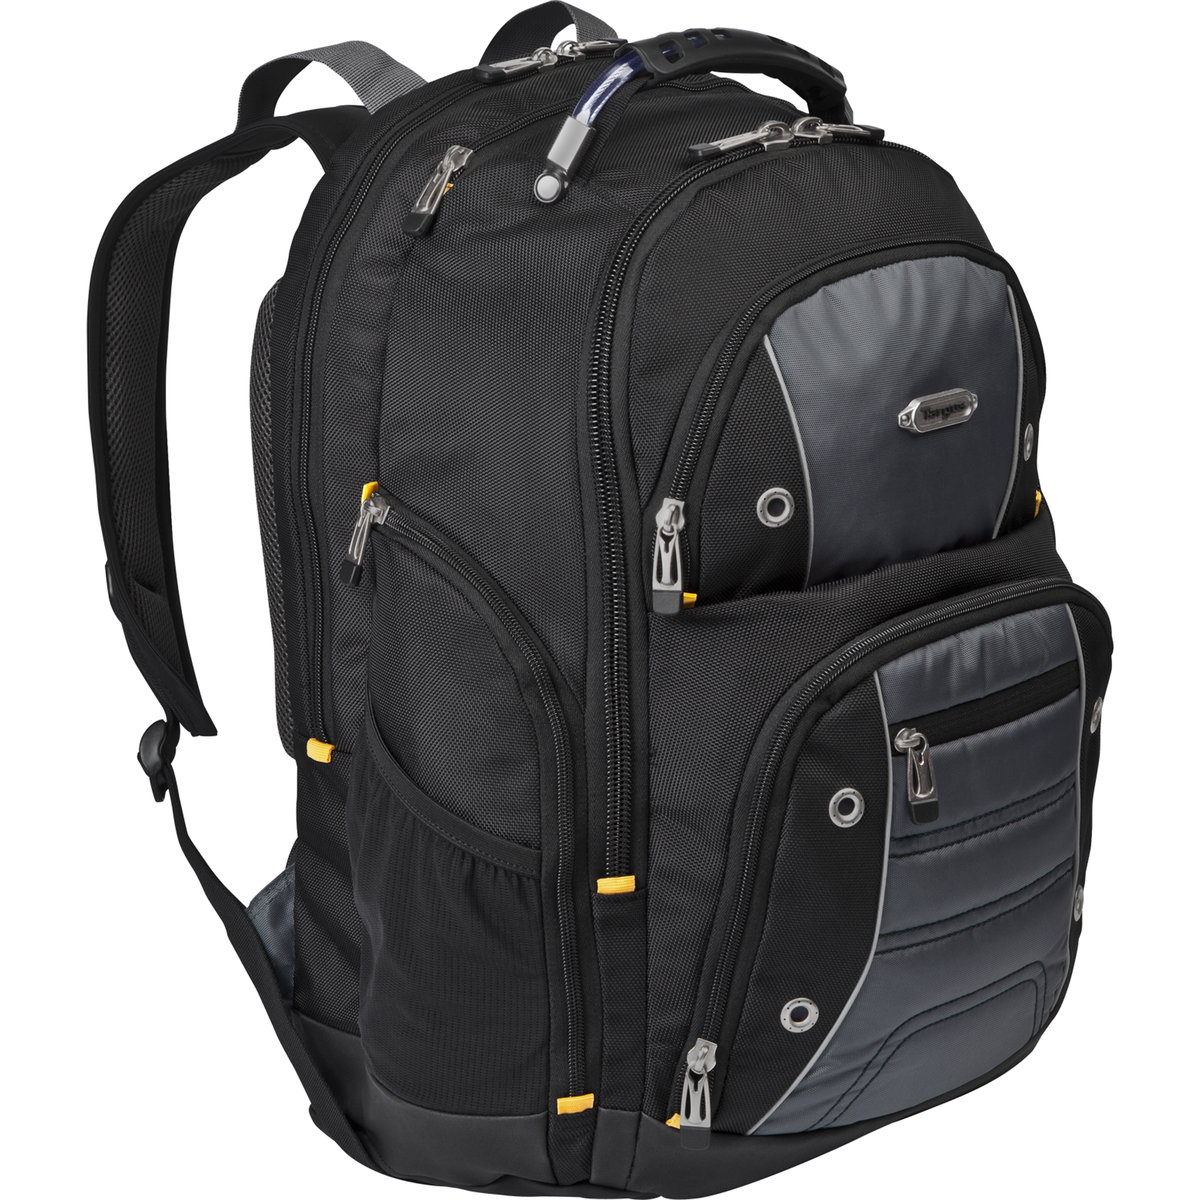 16” Drifter II Laptop Backpack - TSB238US - Black/Gray: Backpacks: Targus